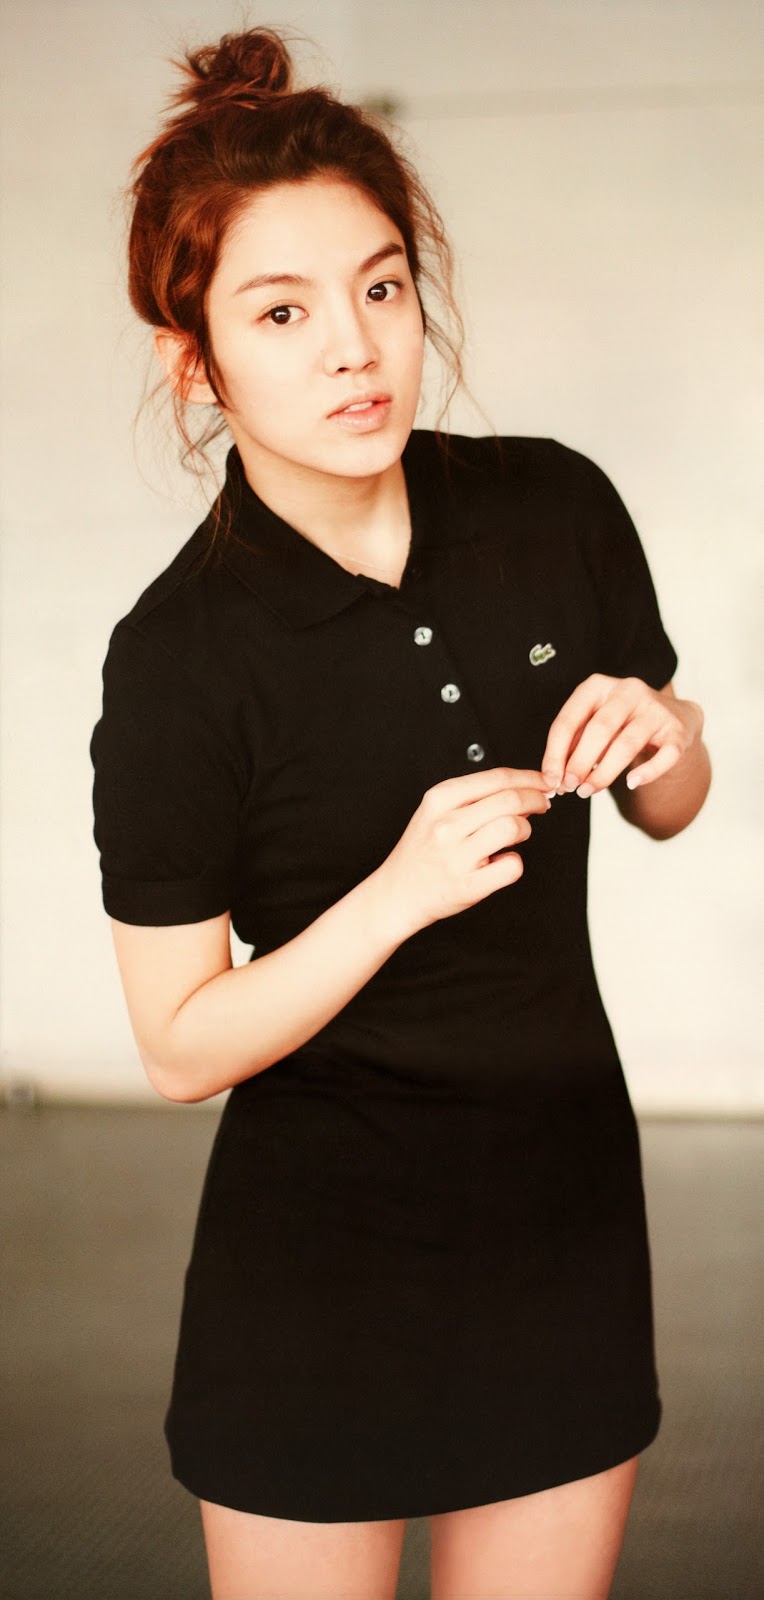 Hyoyeon In Little Black Dress Wallpaper Snsd Artistic Gallery